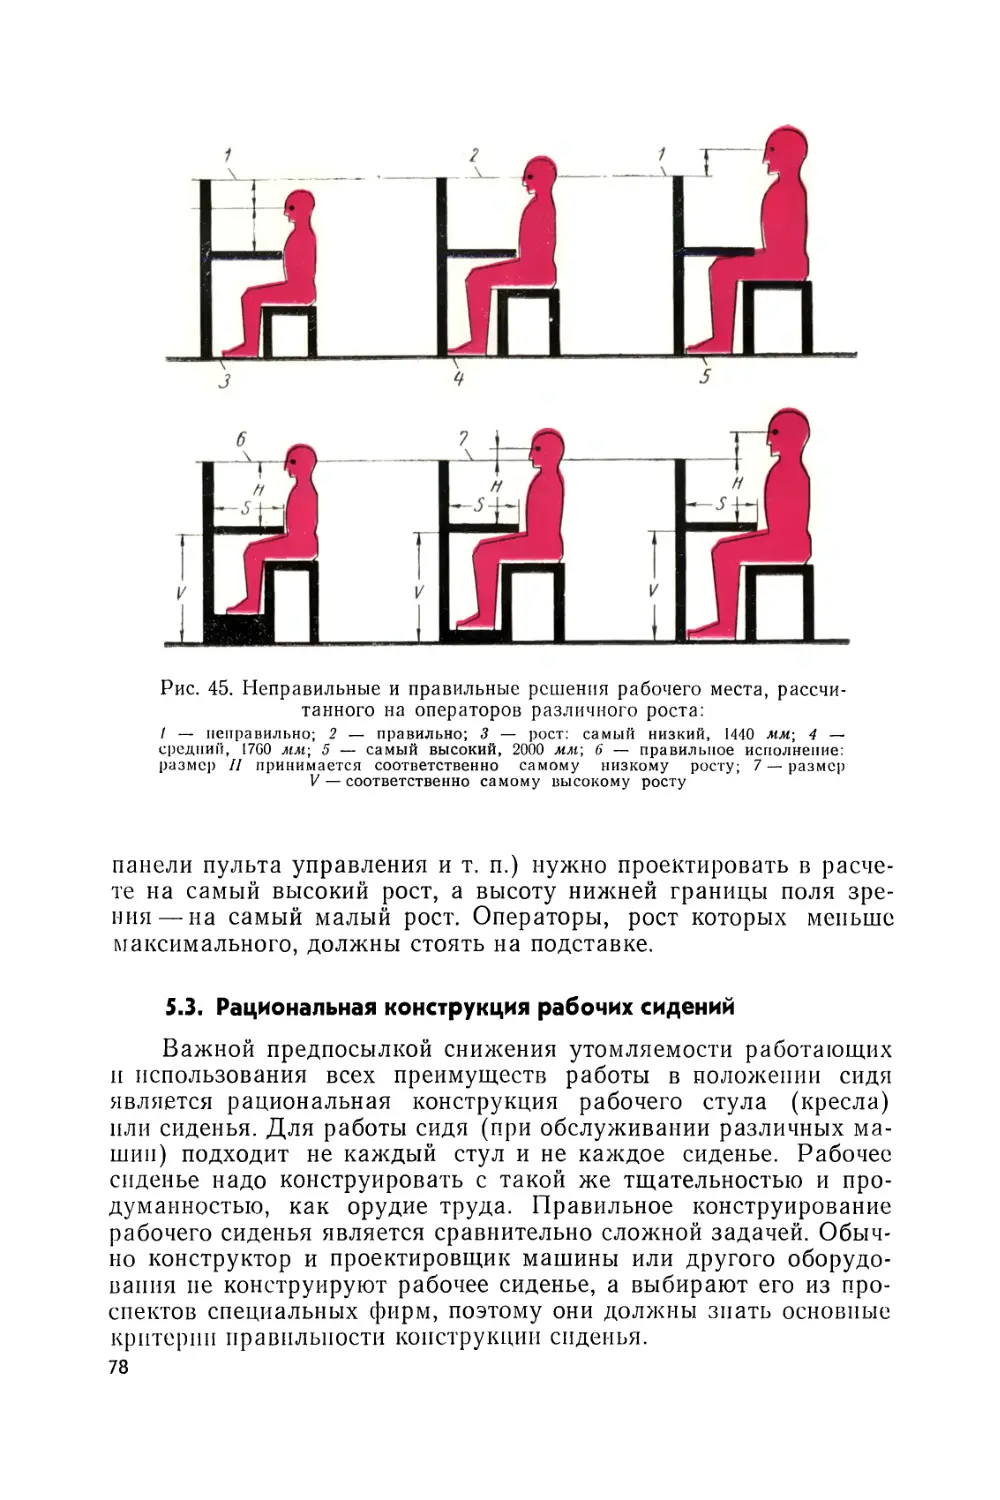 5.3. Рациональная конструкция рабочих сидений